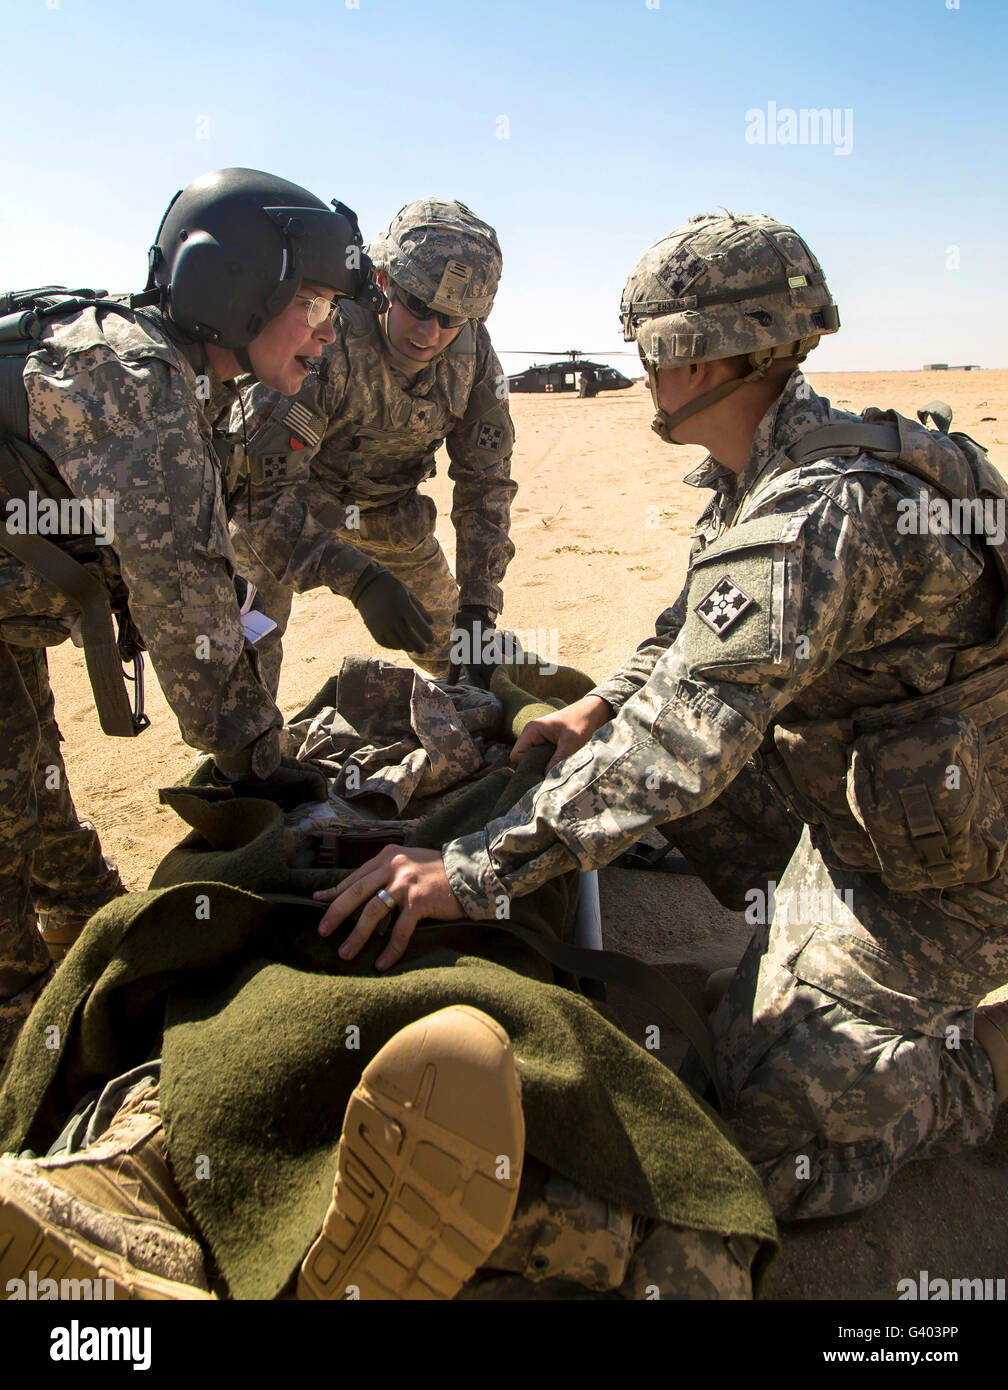 Des soldats se préparent à charger un soldat blessé sur un UH-60 Black Hawk. Banque D'Images